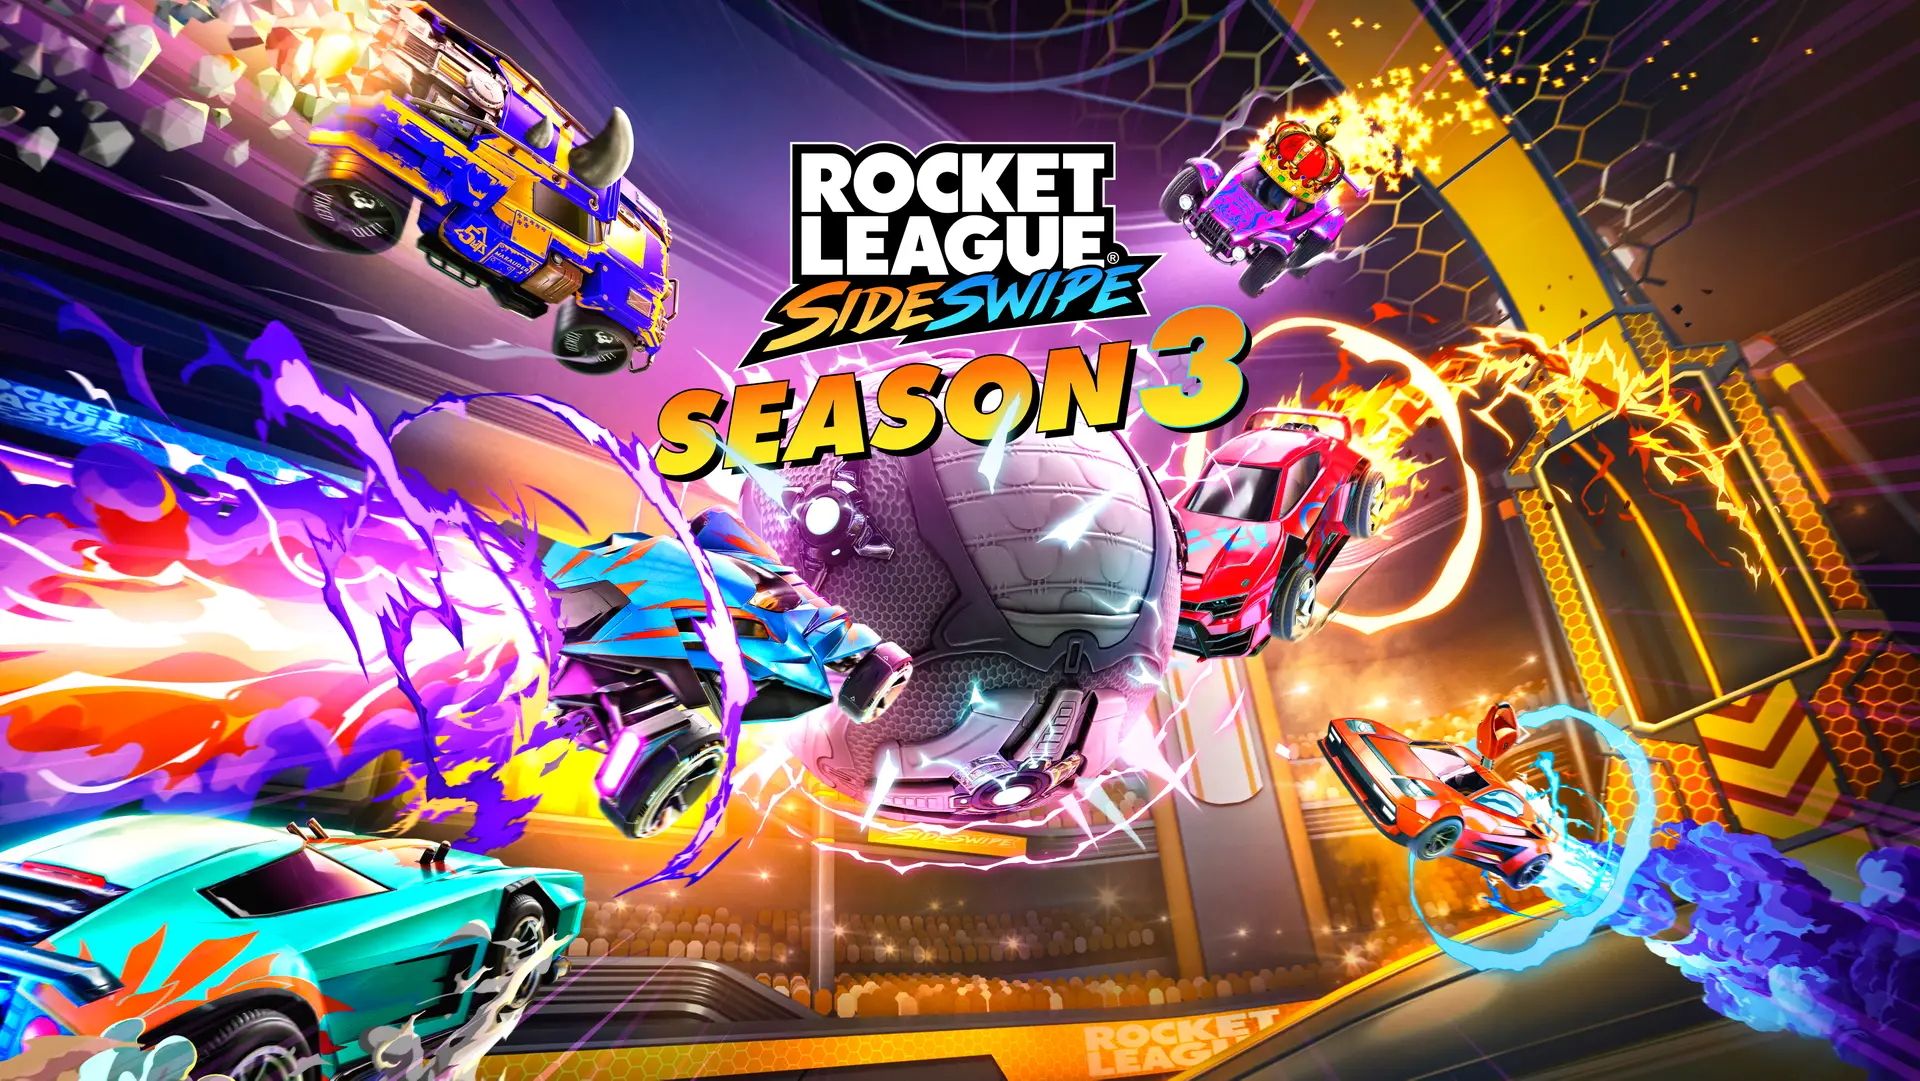 Rocket League Sideswipe season 3 hero